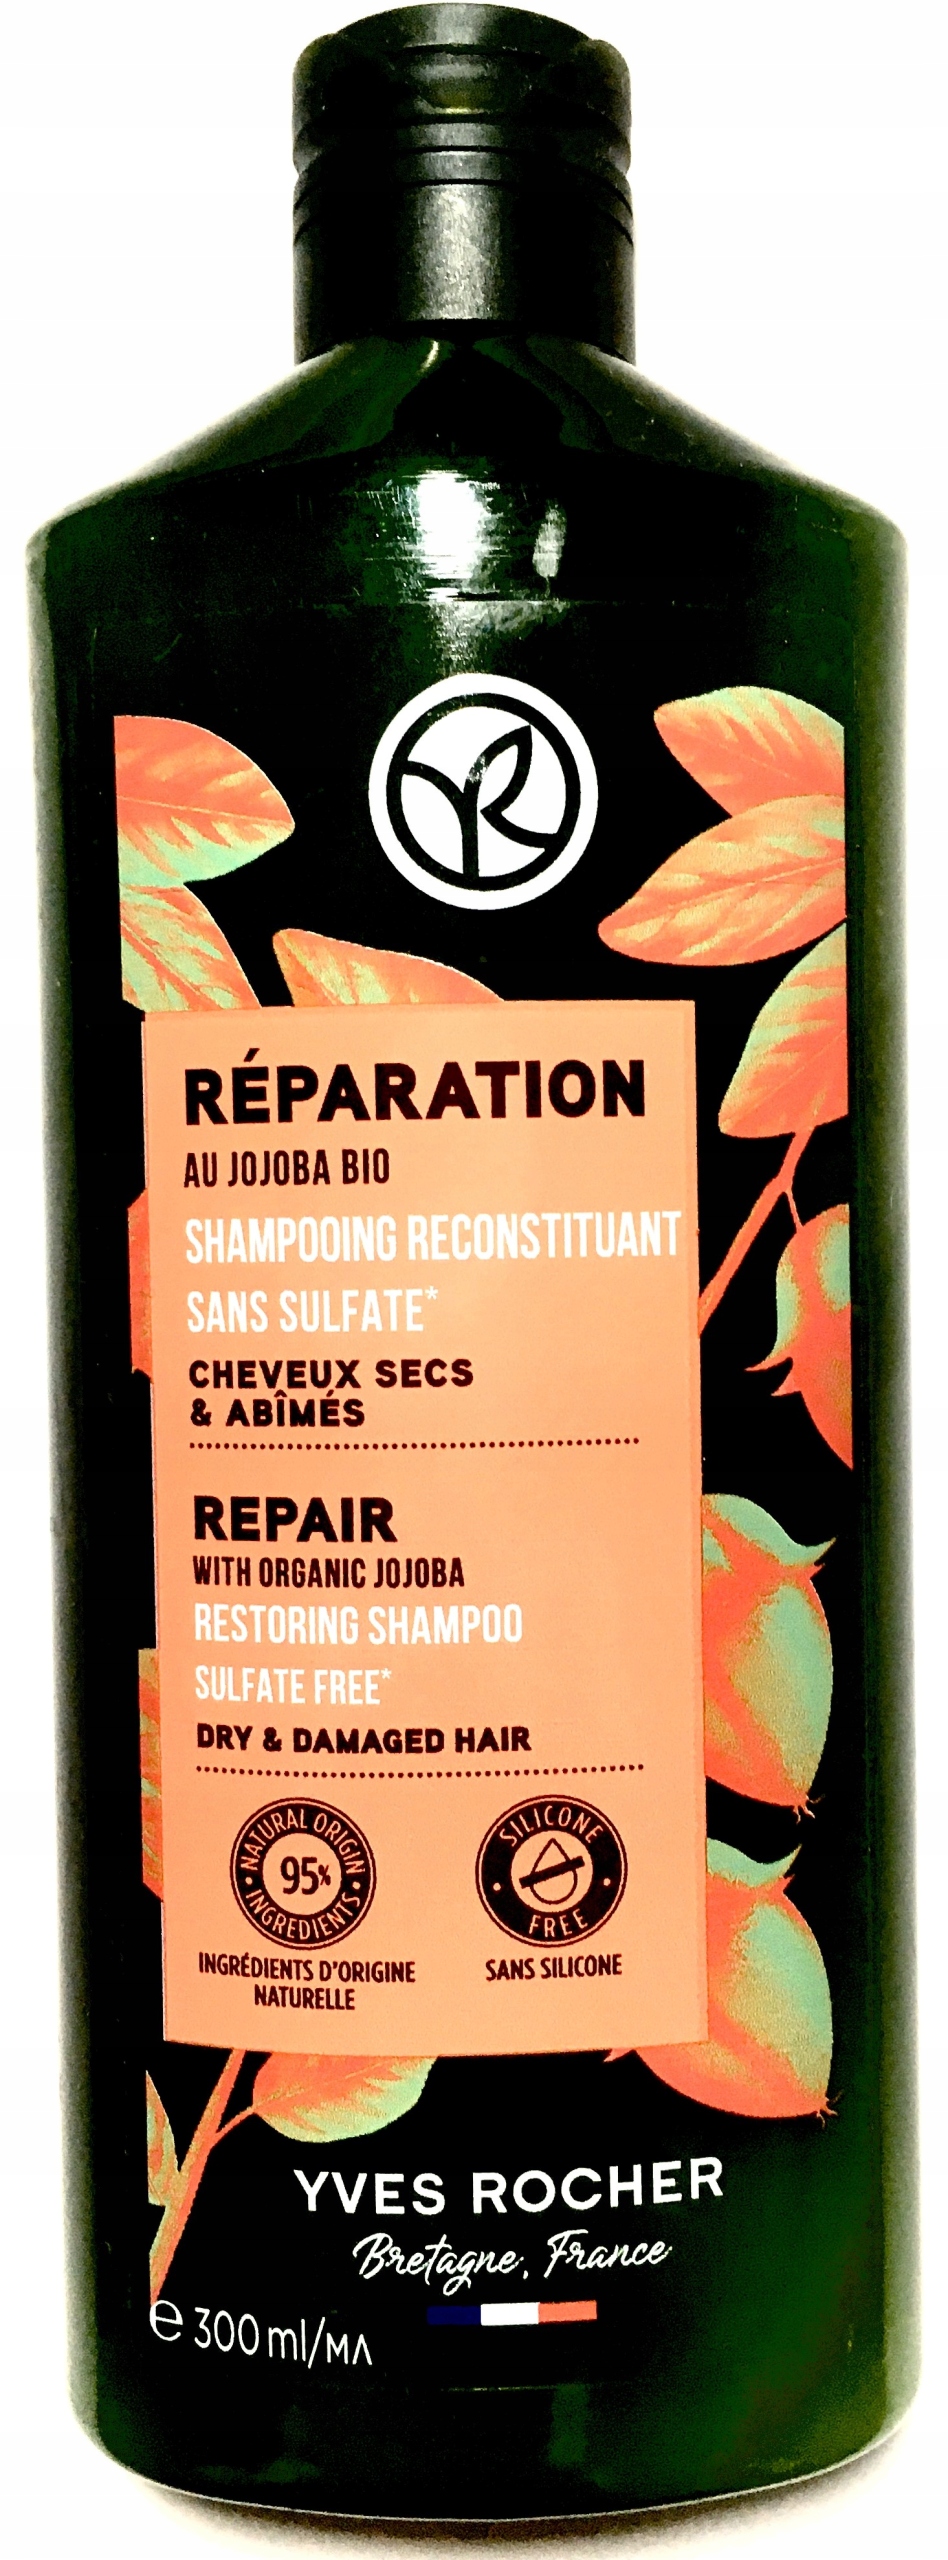 timotei szampon intensywna odbudowa